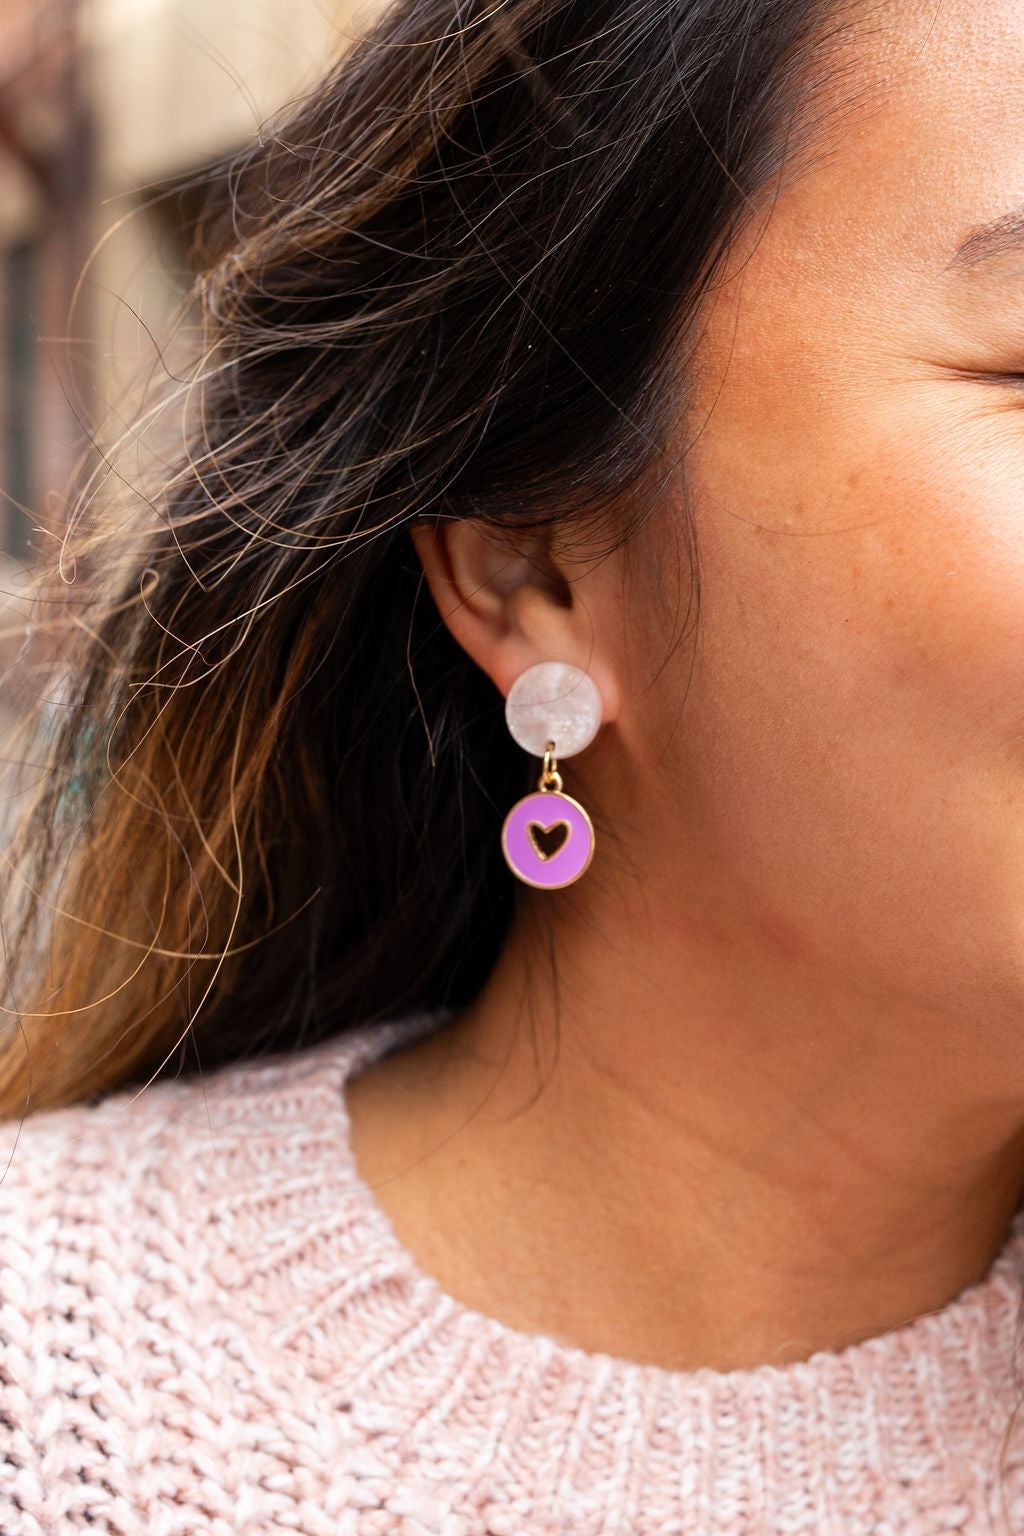 Heart Dangle Earrings - Purple - Inspired Eye Boutique